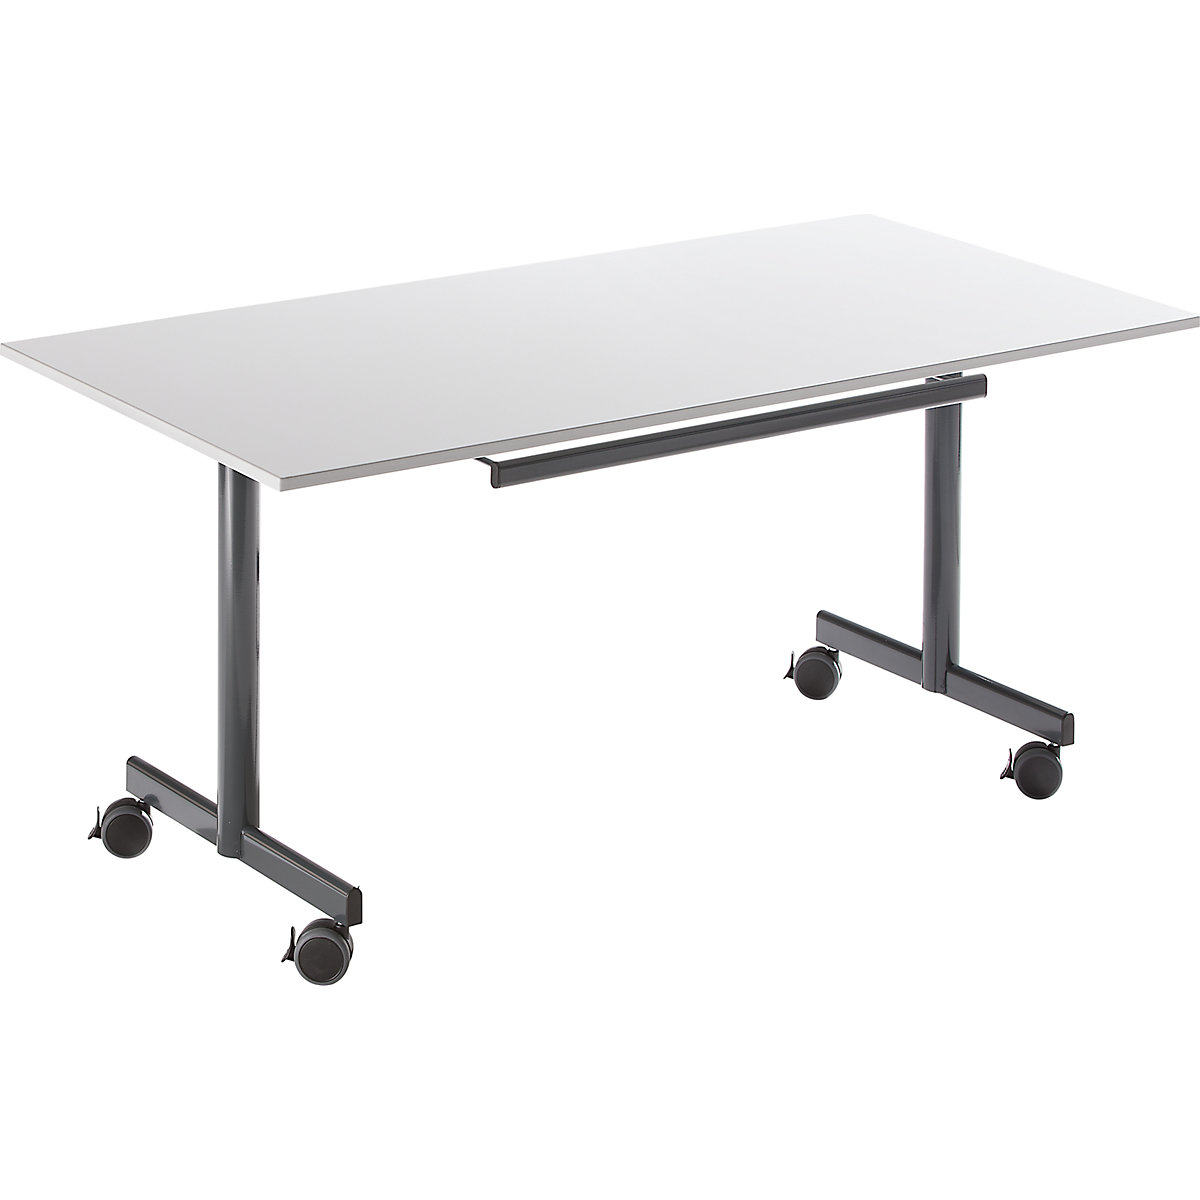 Table mobile à plateau rabattable, h x l x p 720 x 1600 x 800 mm, gris-3